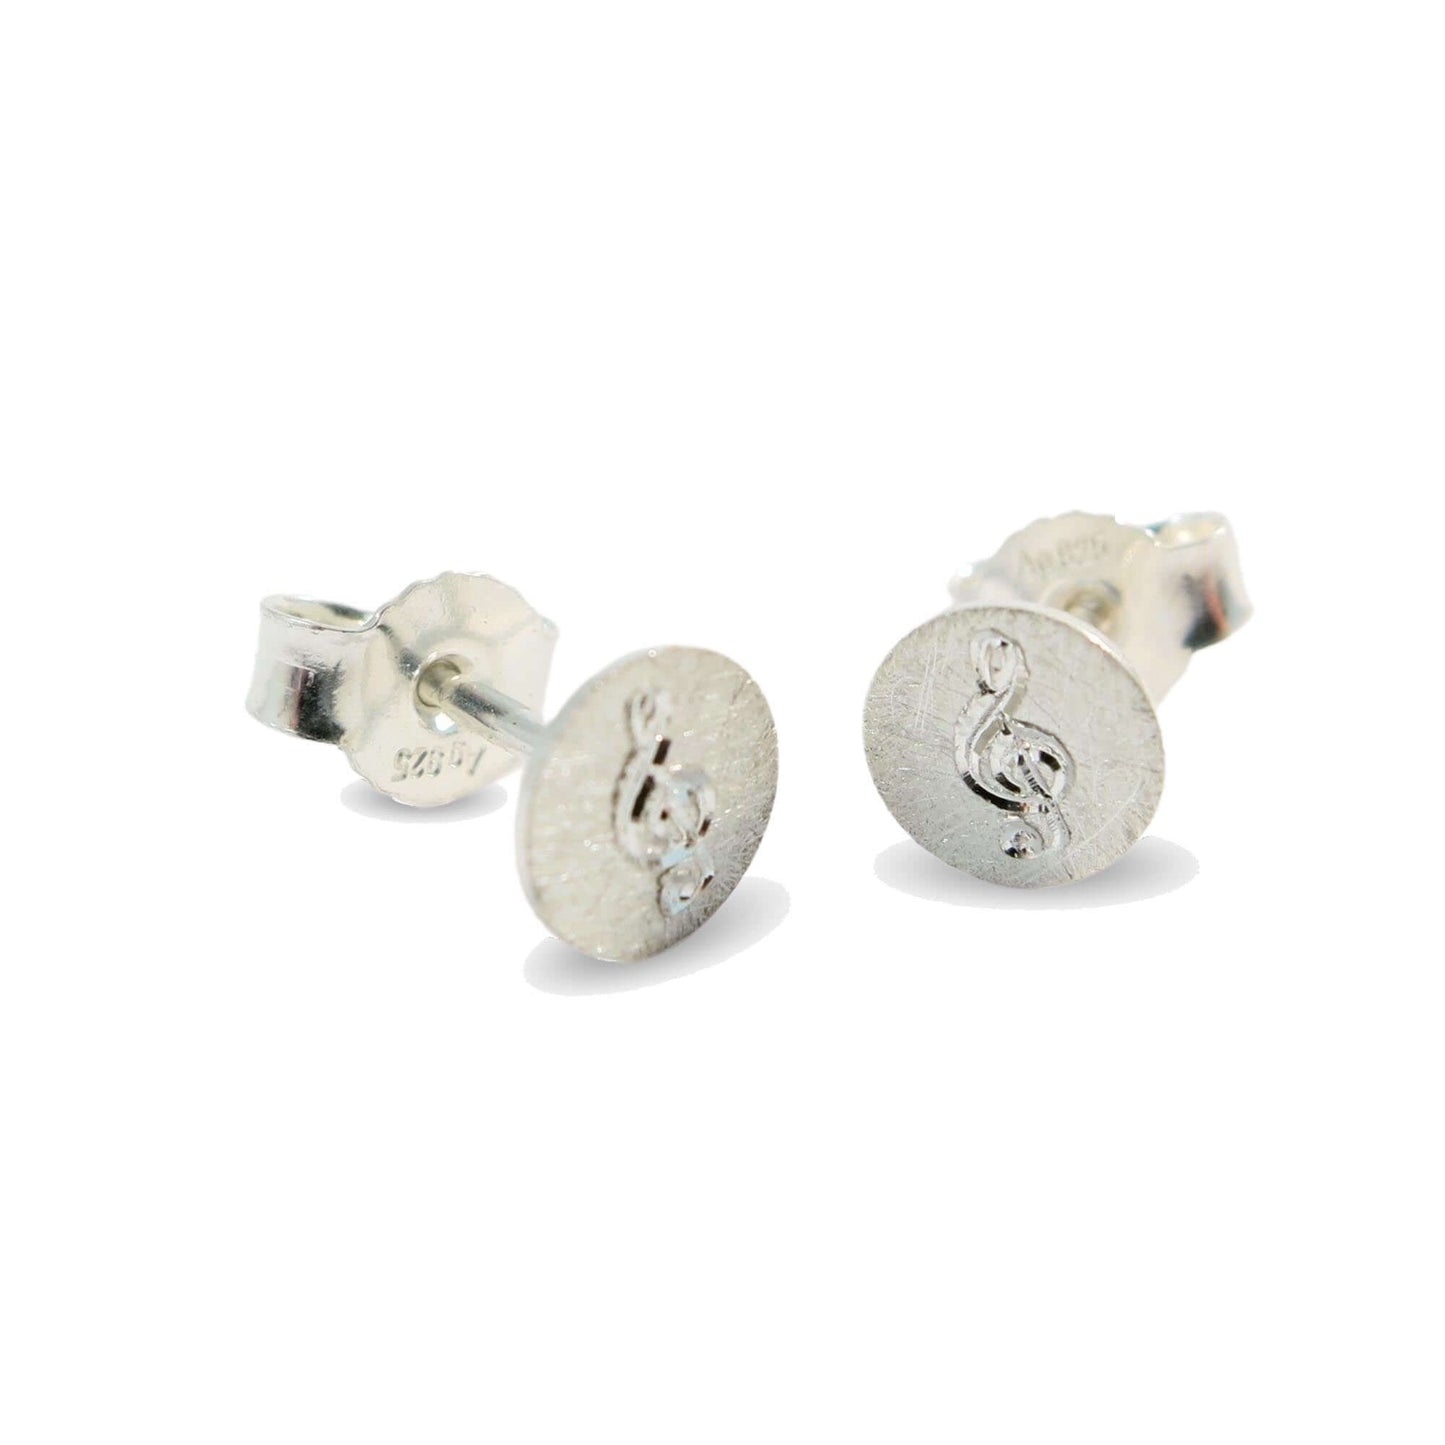 Silber Notenschlussel Ohrringe | Traumschmuckwerkstatt Shop